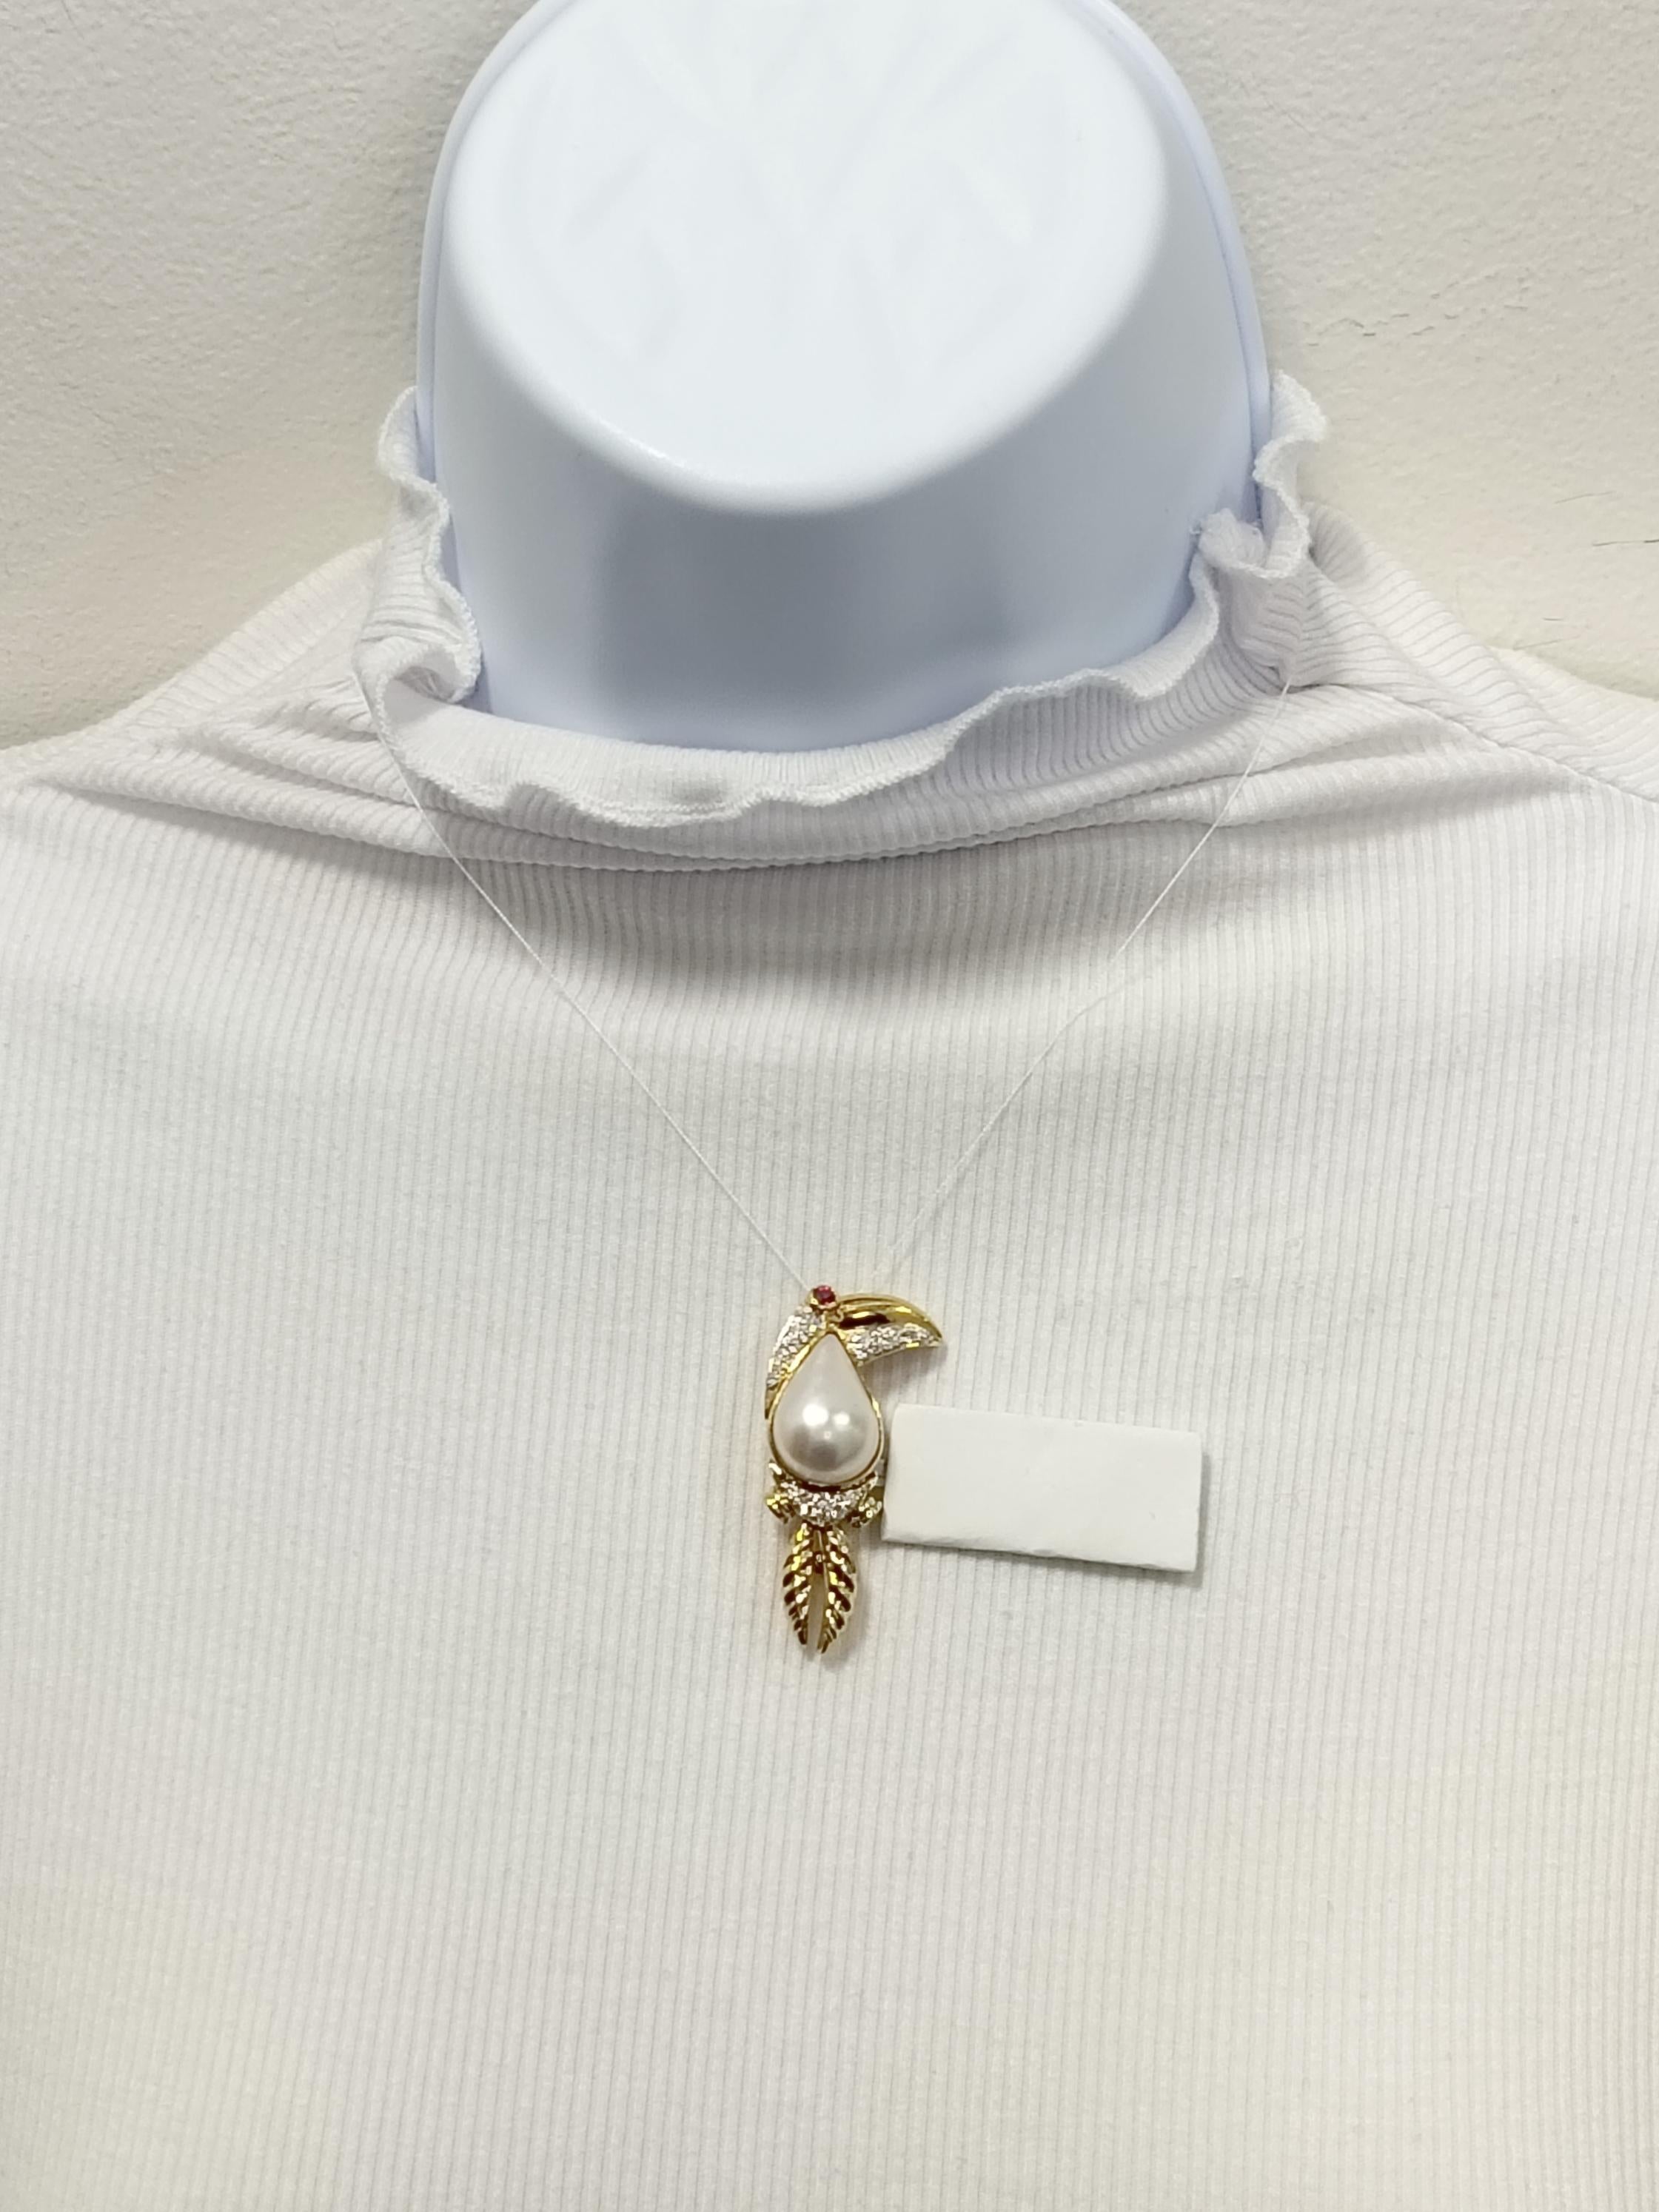 Wunderschöne Tukan-Brosche mit einer großen birnenförmigen weißen Mabe-Perle und 0,35 ct. weißen runden Diamanten von guter Qualität.  Handgefertigt in 18k Gelbgold.  Das ist eine lustige und einzigartige Brosche!